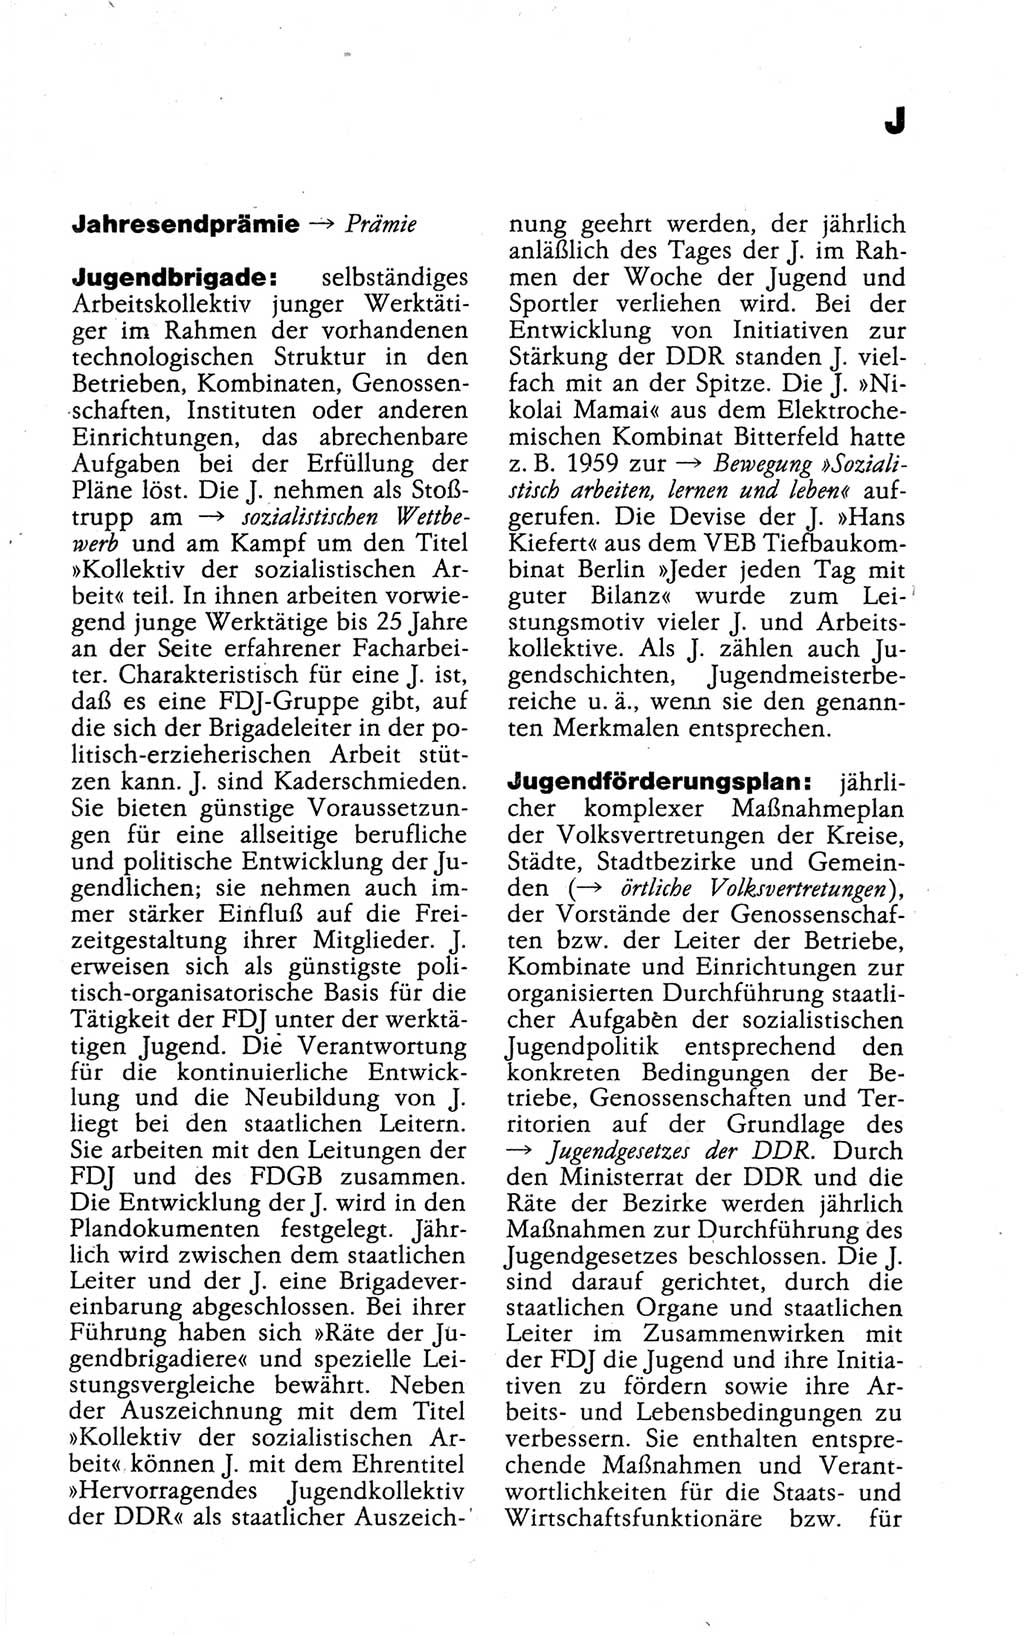 Kleines politisches Wörterbuch [Deutsche Demokratische Republik (DDR)] 1988, Seite 457 (Kl. pol. Wb. DDR 1988, S. 457)